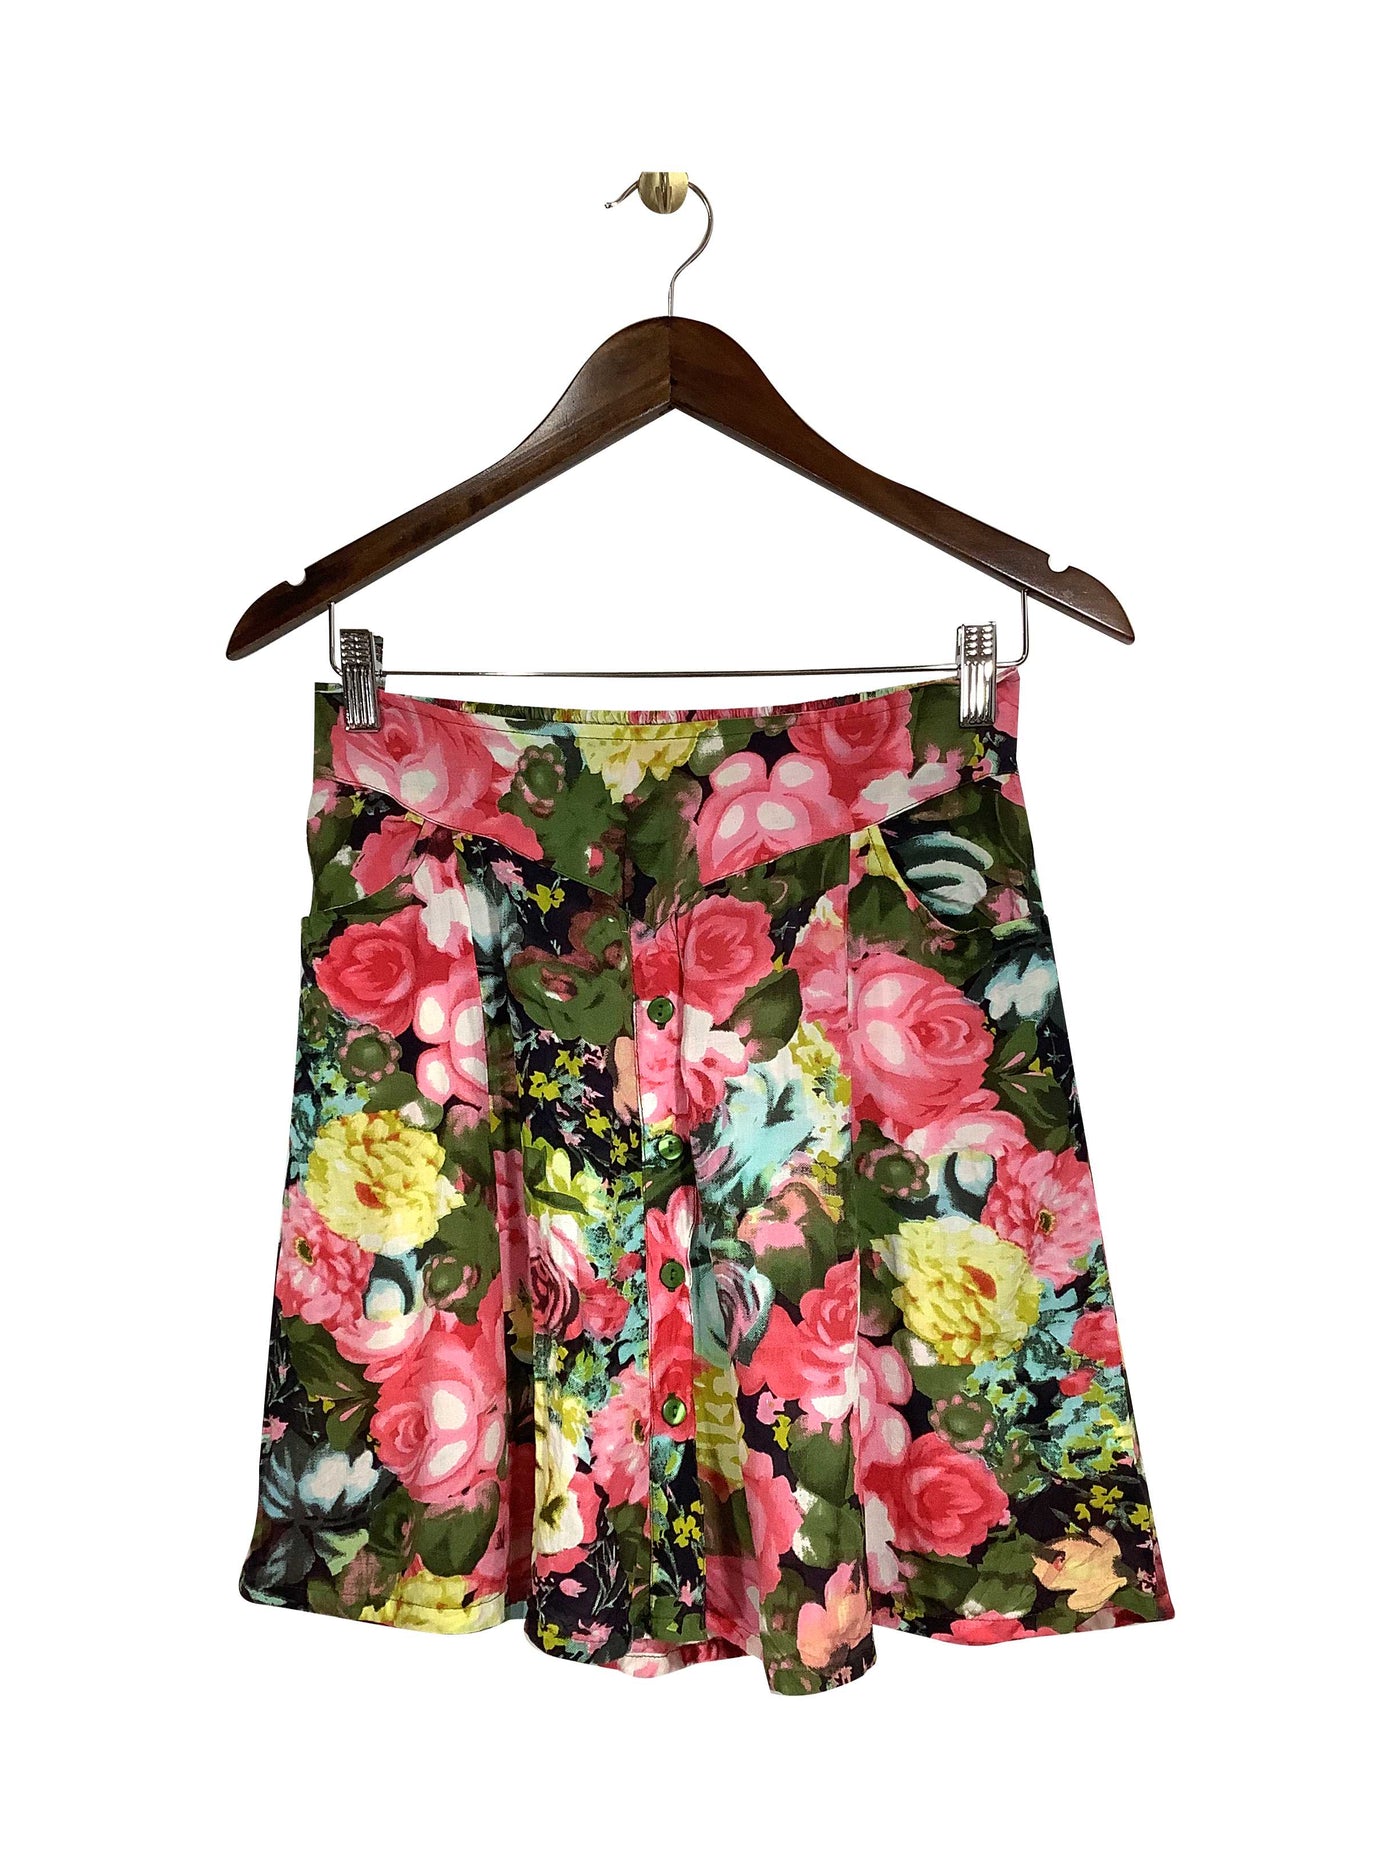 SHAI Regular fit Skirt in Pink - Size S | 15 $ KOOP